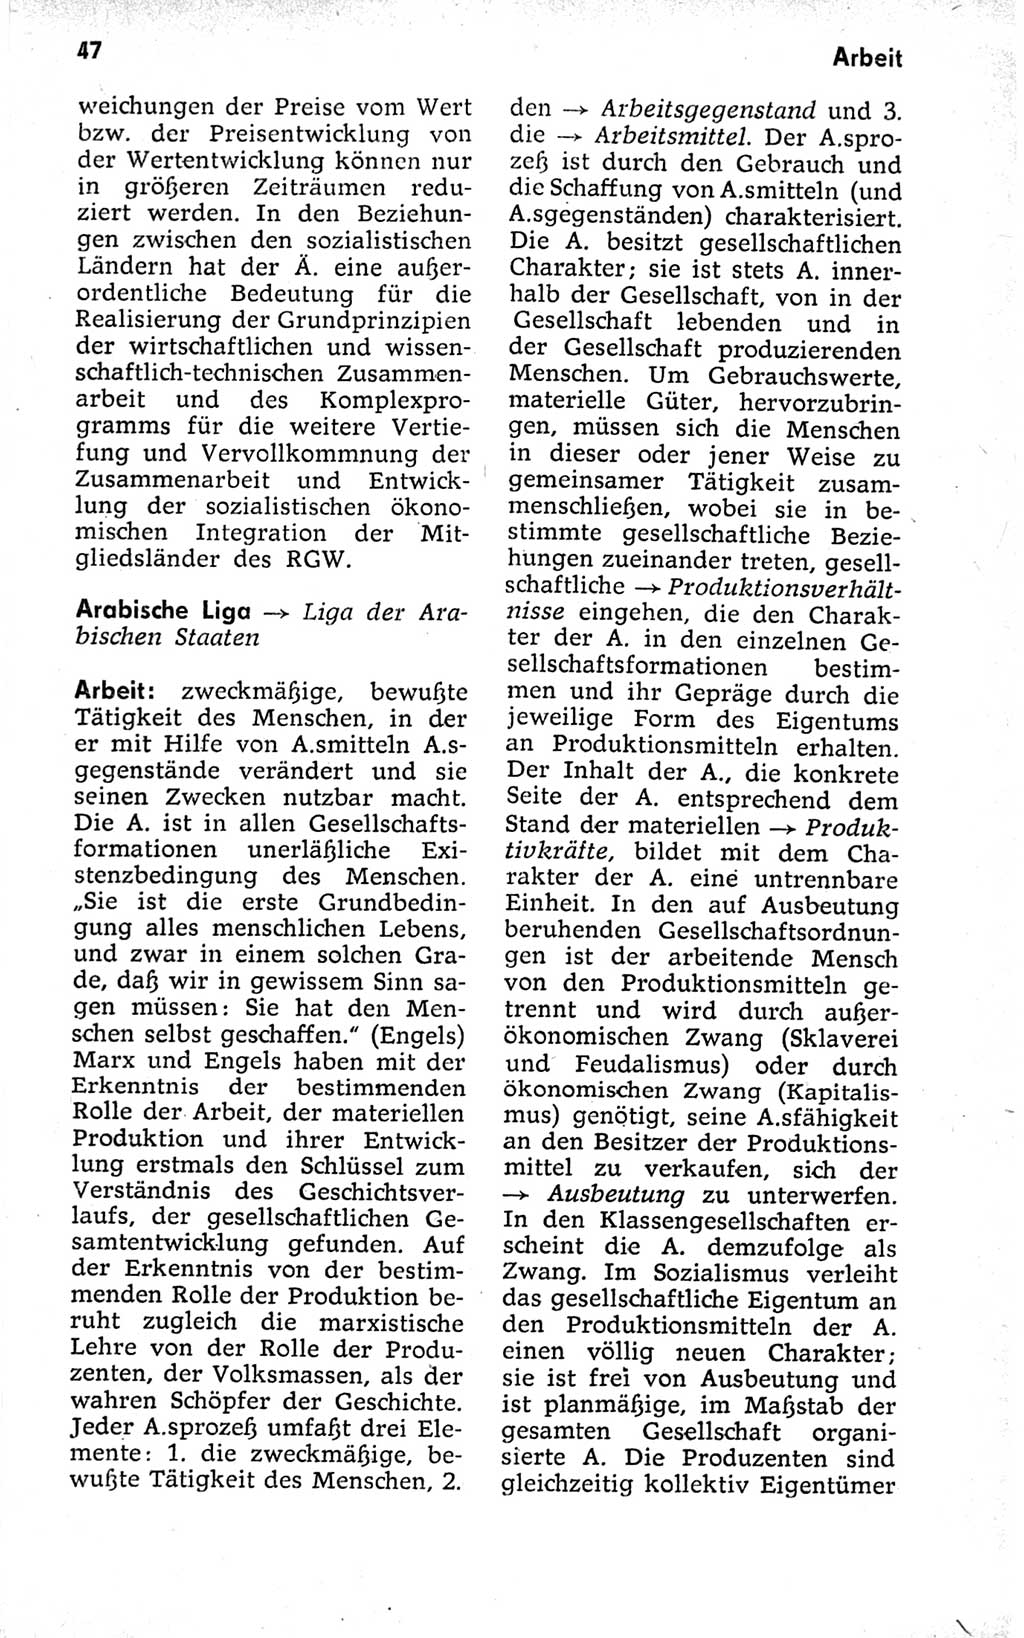 Kleines politisches Wörterbuch [Deutsche Demokratische Republik (DDR)] 1973, Seite 47 (Kl. pol. Wb. DDR 1973, S. 47)